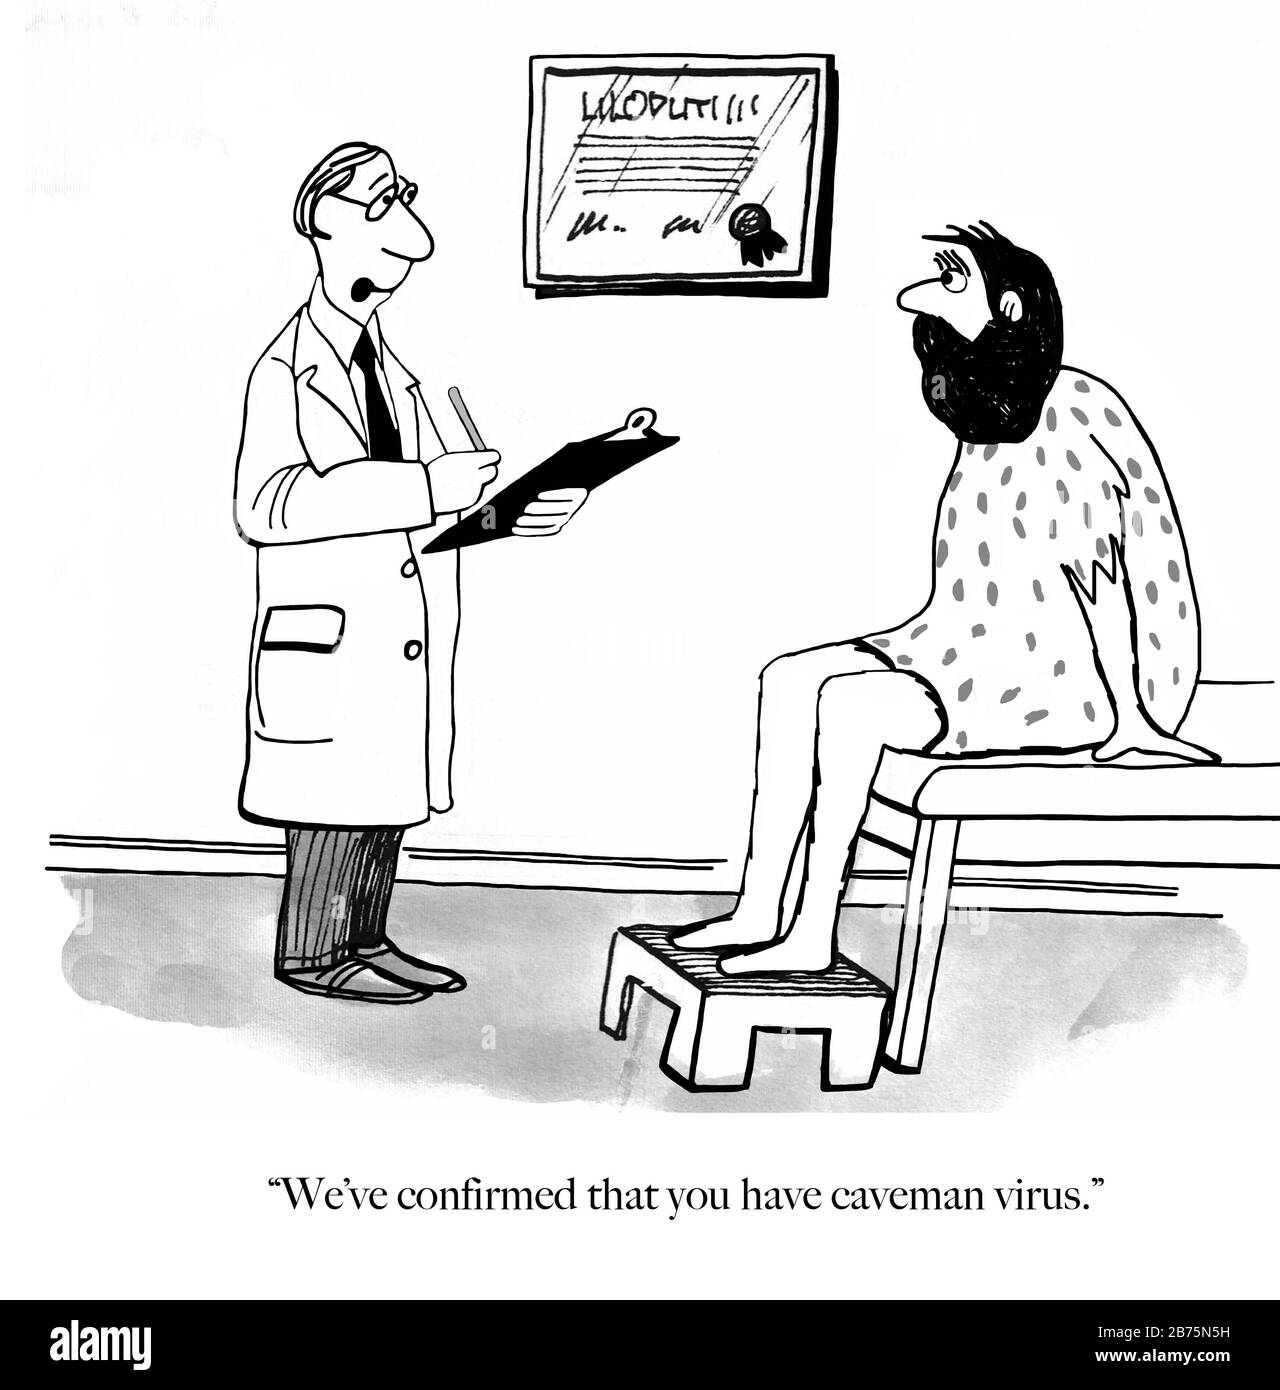 Le médecin ayant un dossier de test informe le patient qui ressemble à cavemman qu'il a le virus caveman Banque D'Images